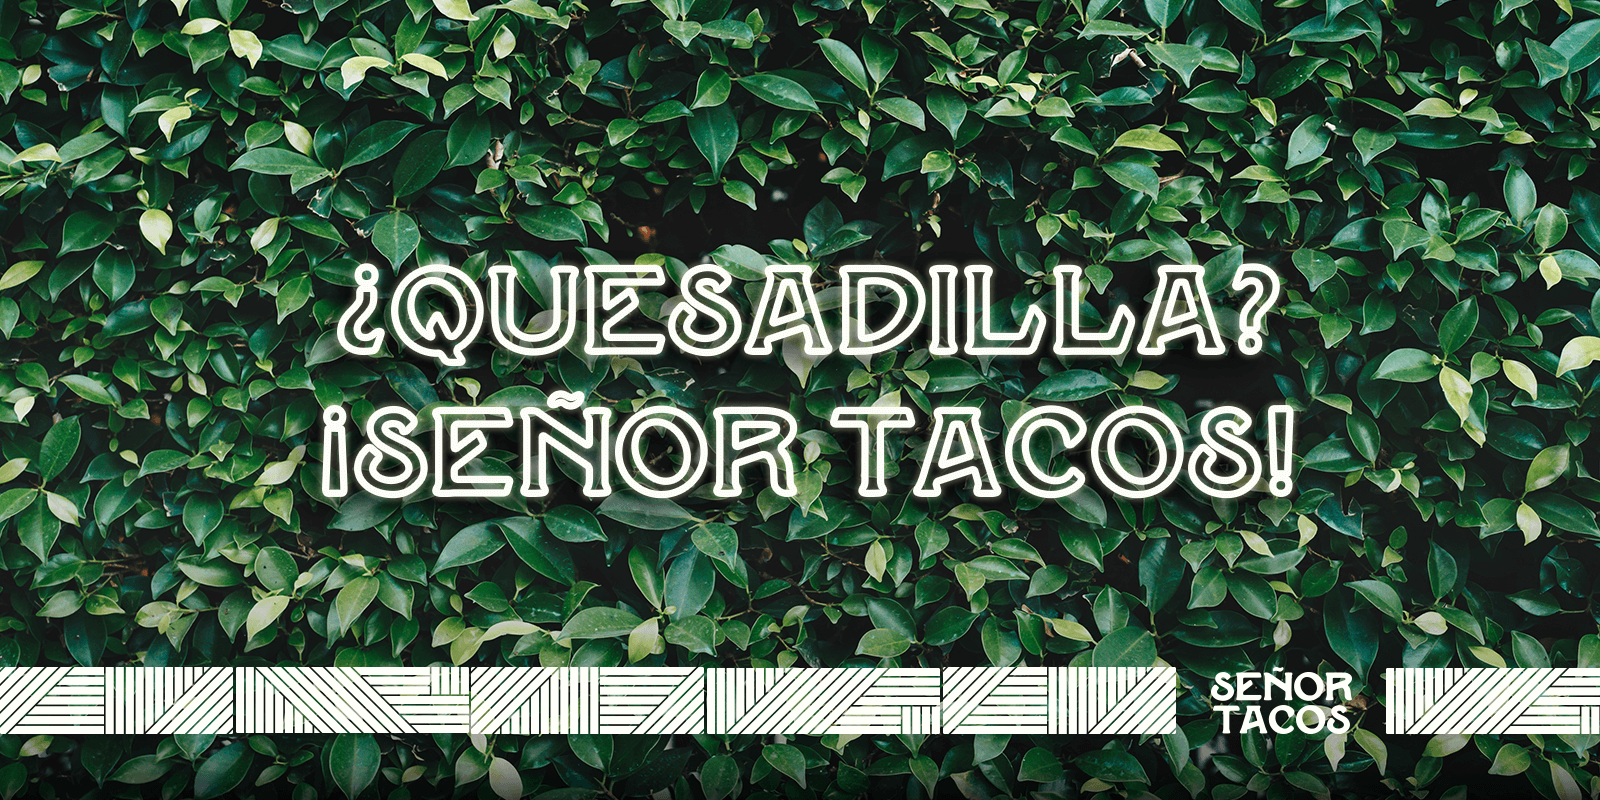 Senor Tacos Ques